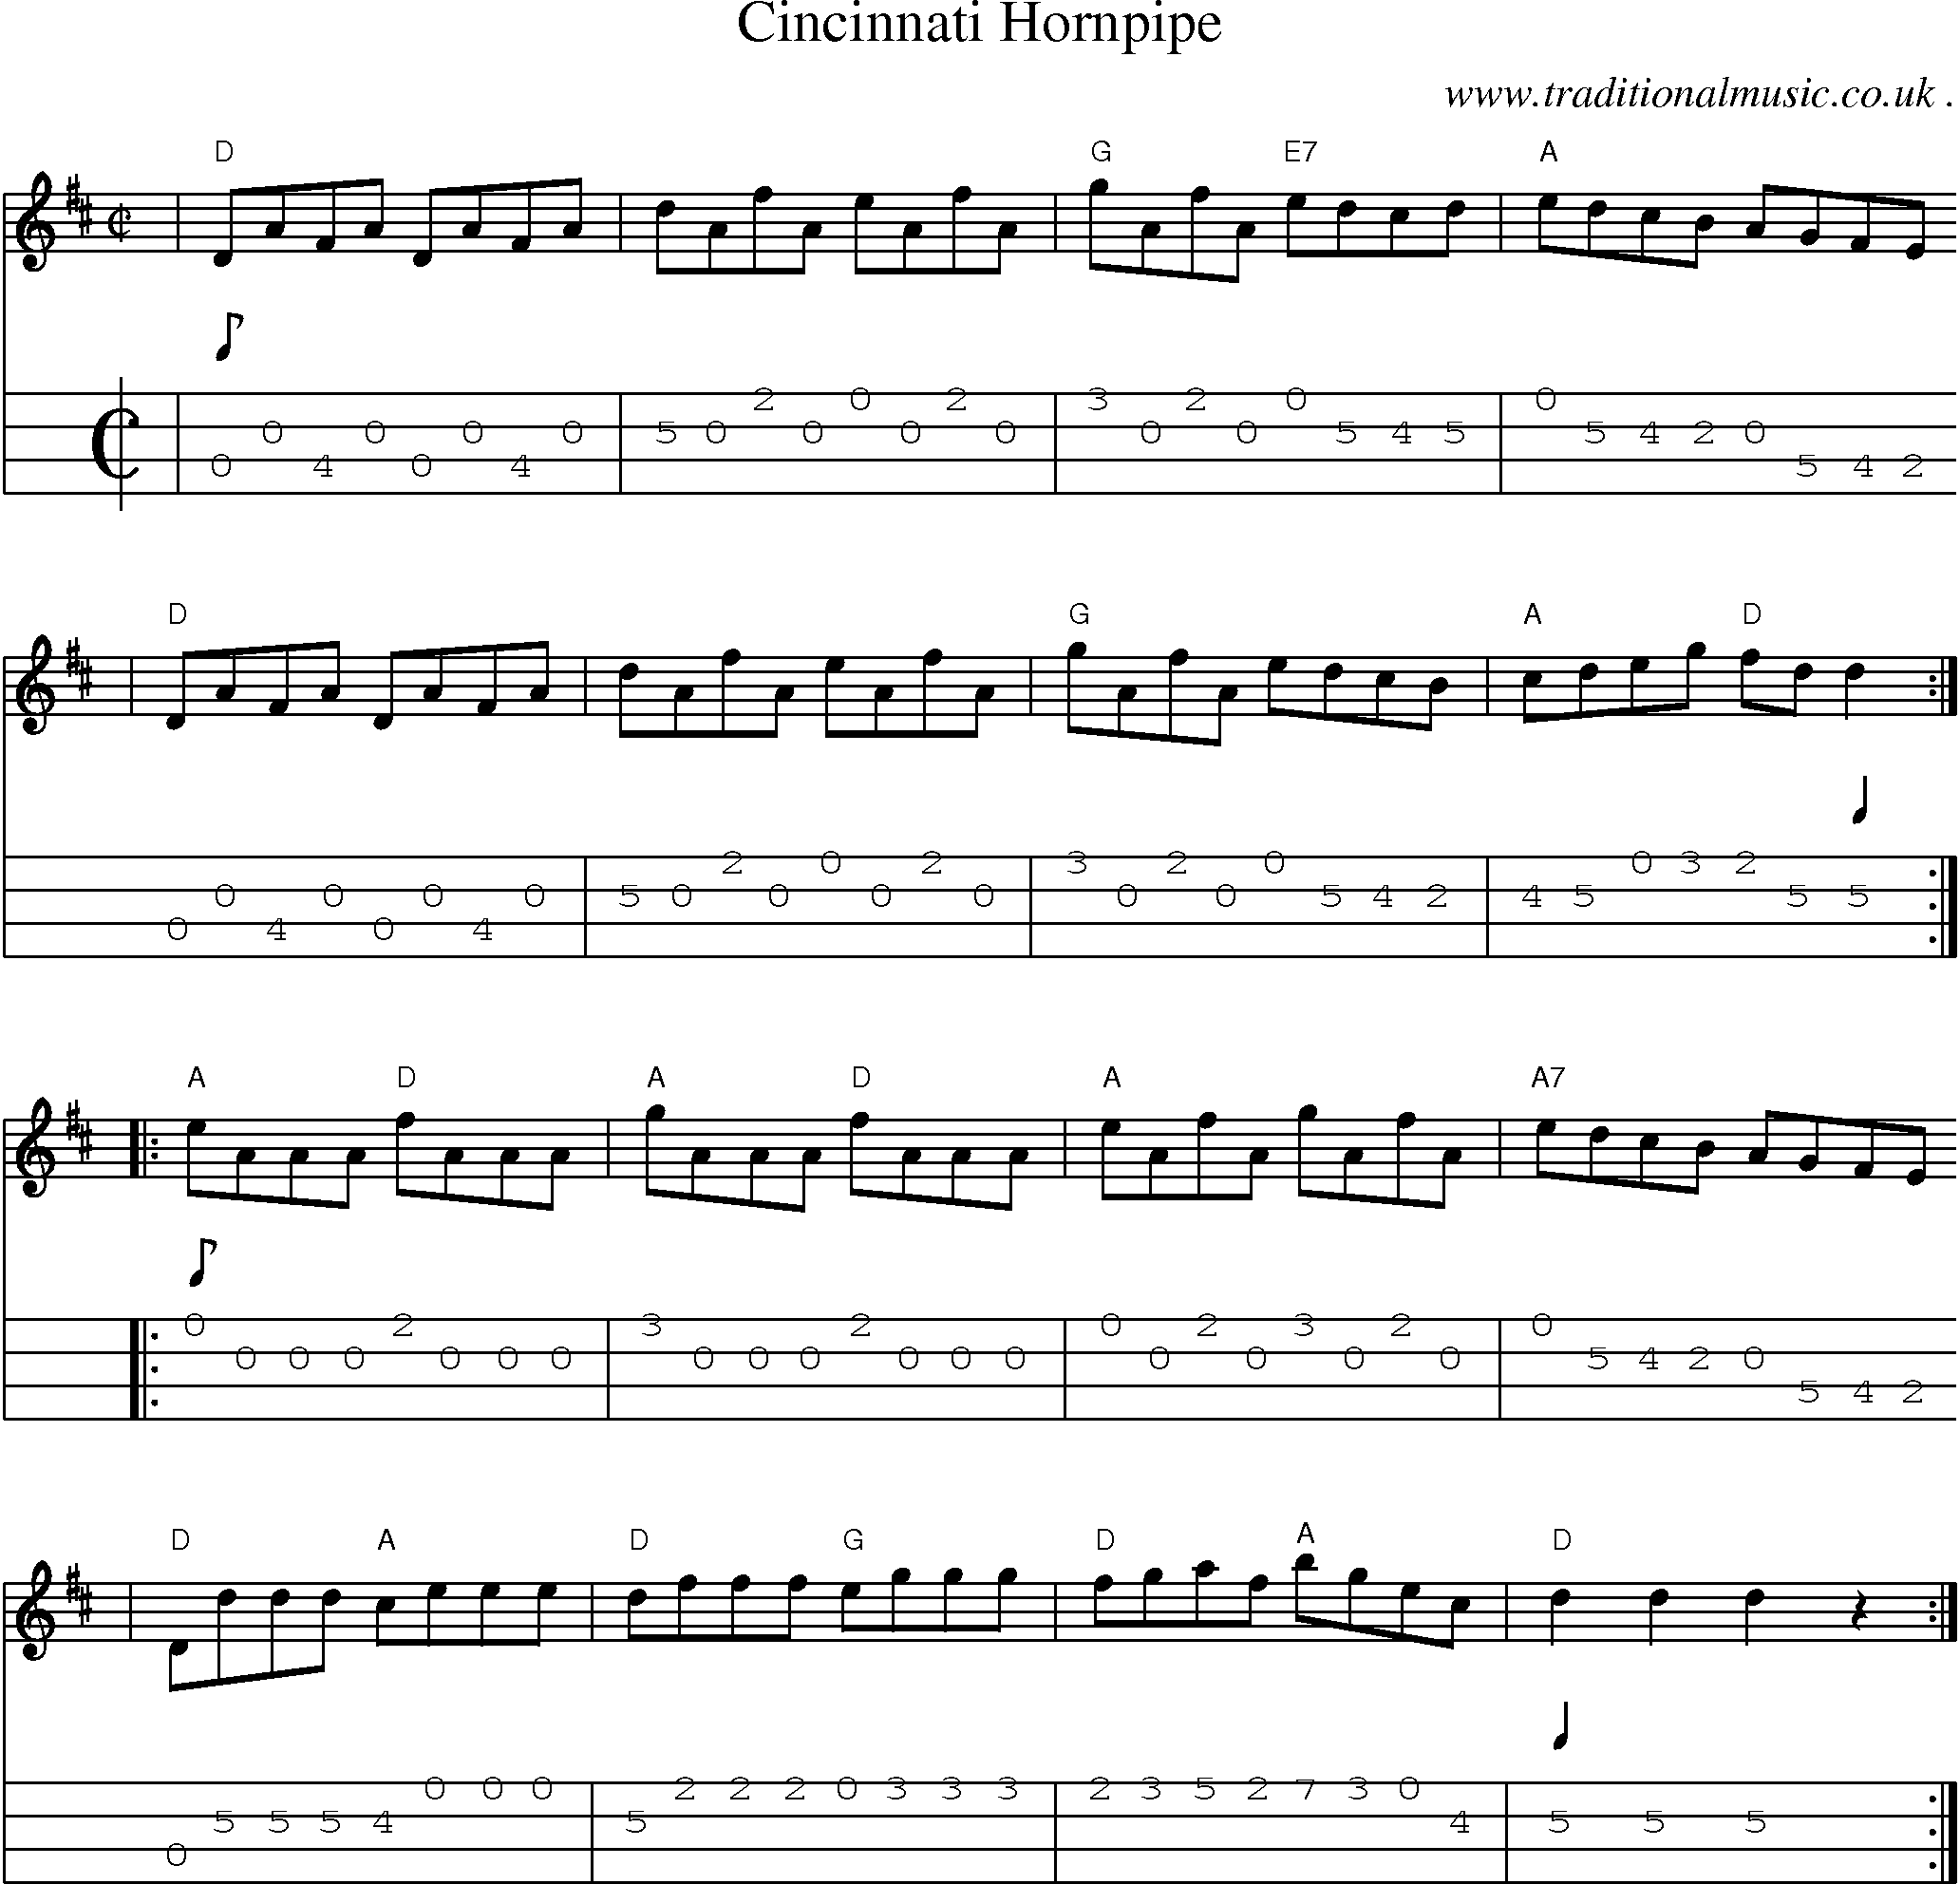 Music Score and Mandolin Tabs for Cincinnati Hornpipe